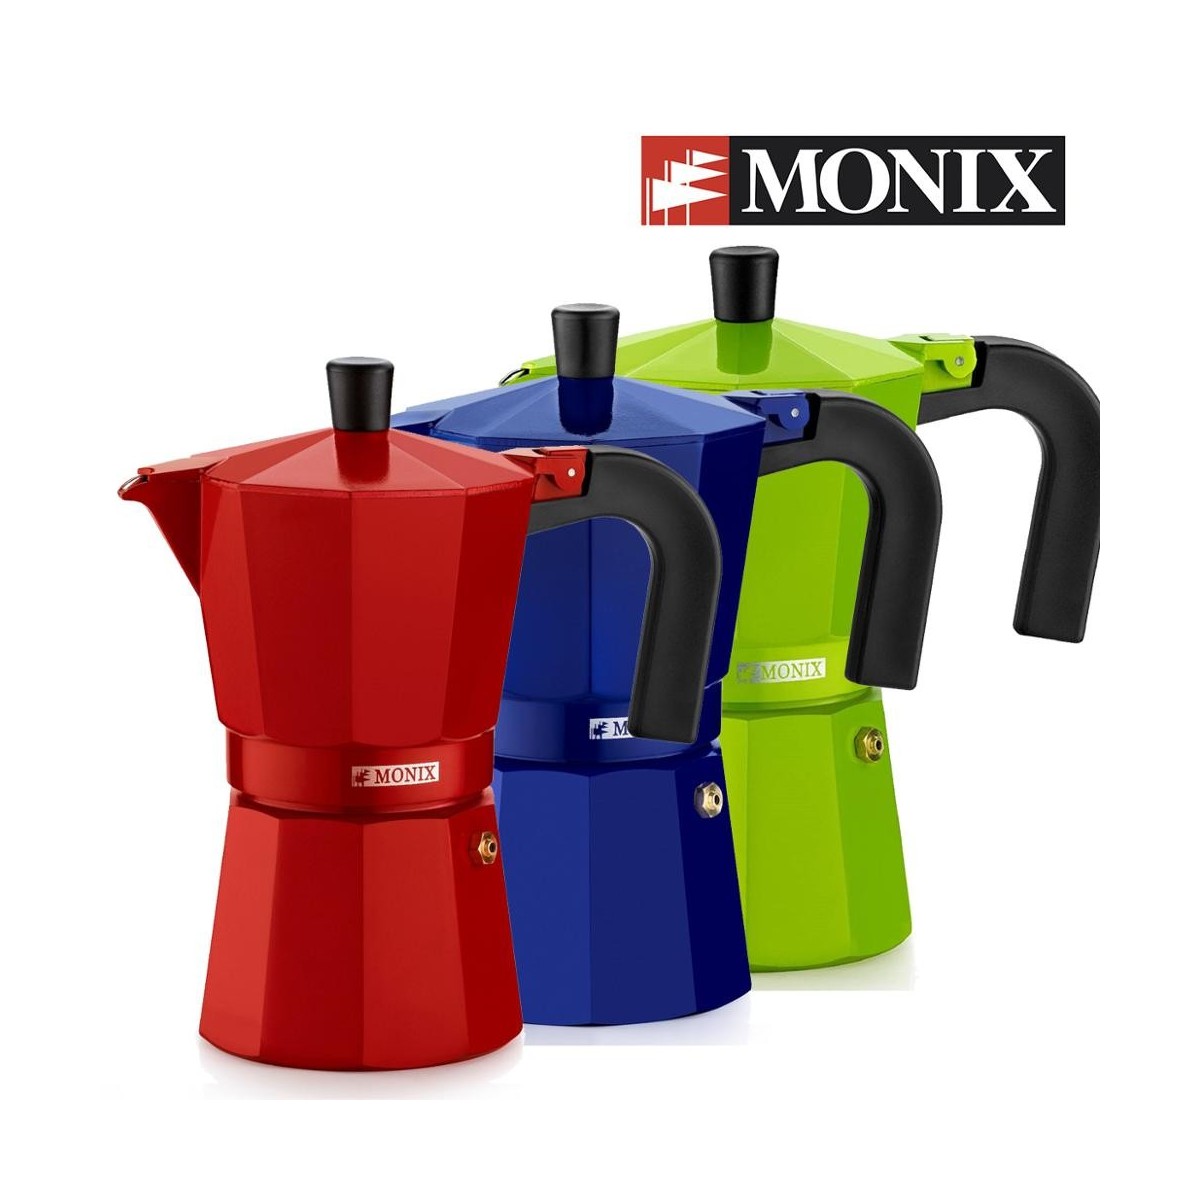 Monix - Cafetera Italiana de Aluminio. Fresa, cobalto o Lima. De 3 a 9  tazas. Para cocina de gas, vitroceramica y eléctrica